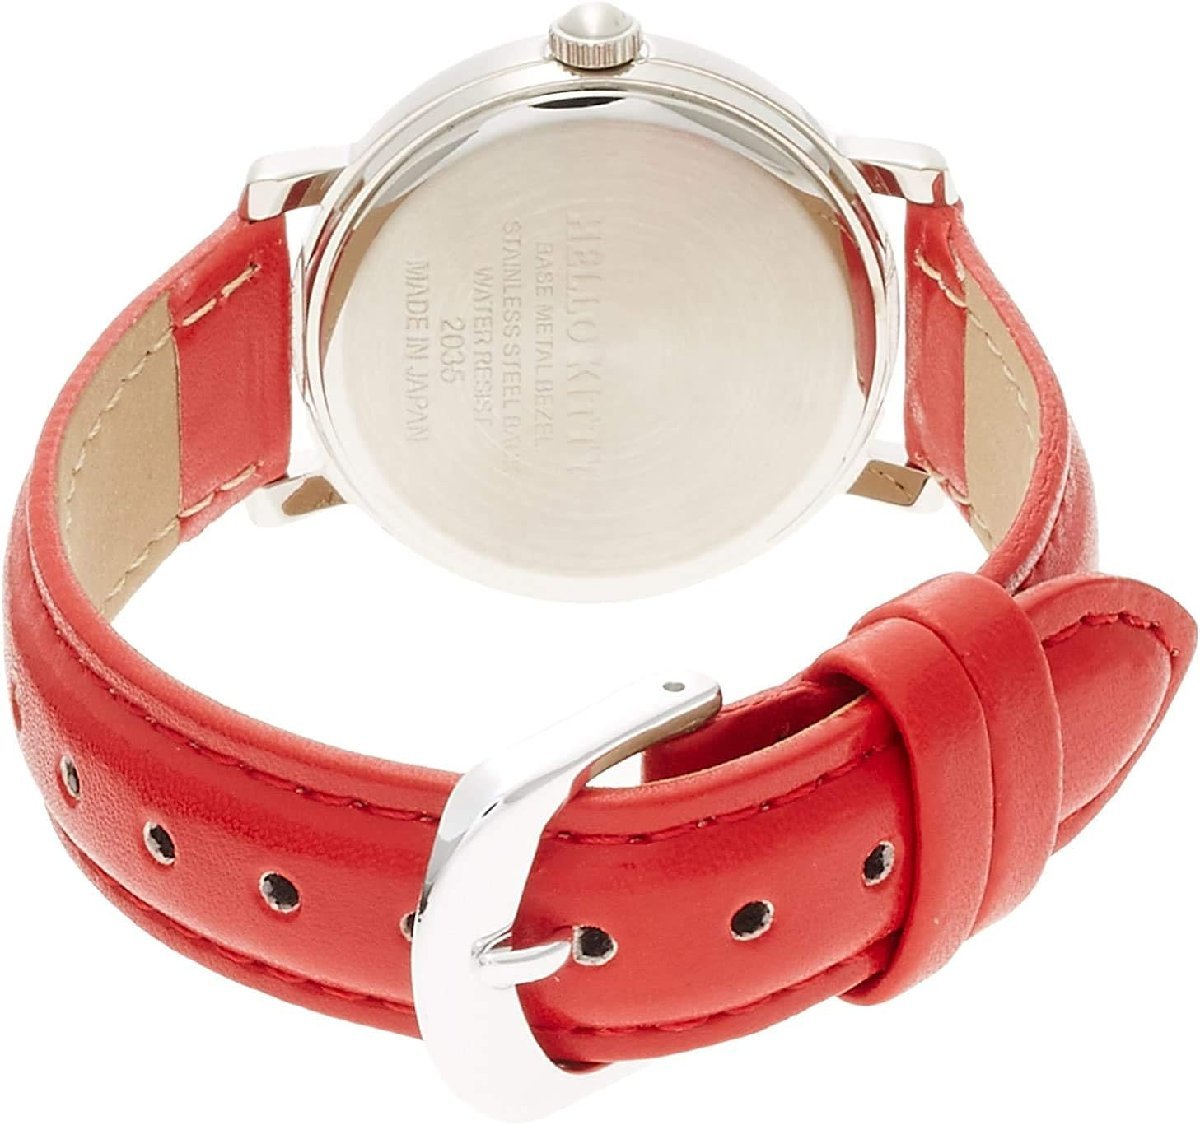  Citizen наручные часы Hello Kitty водонепроницаемый кожа ремень сделано в Японии 0003N003 серебряный / красный 4966006058192/ бесплатная доставка почтовая доставка отметка ..